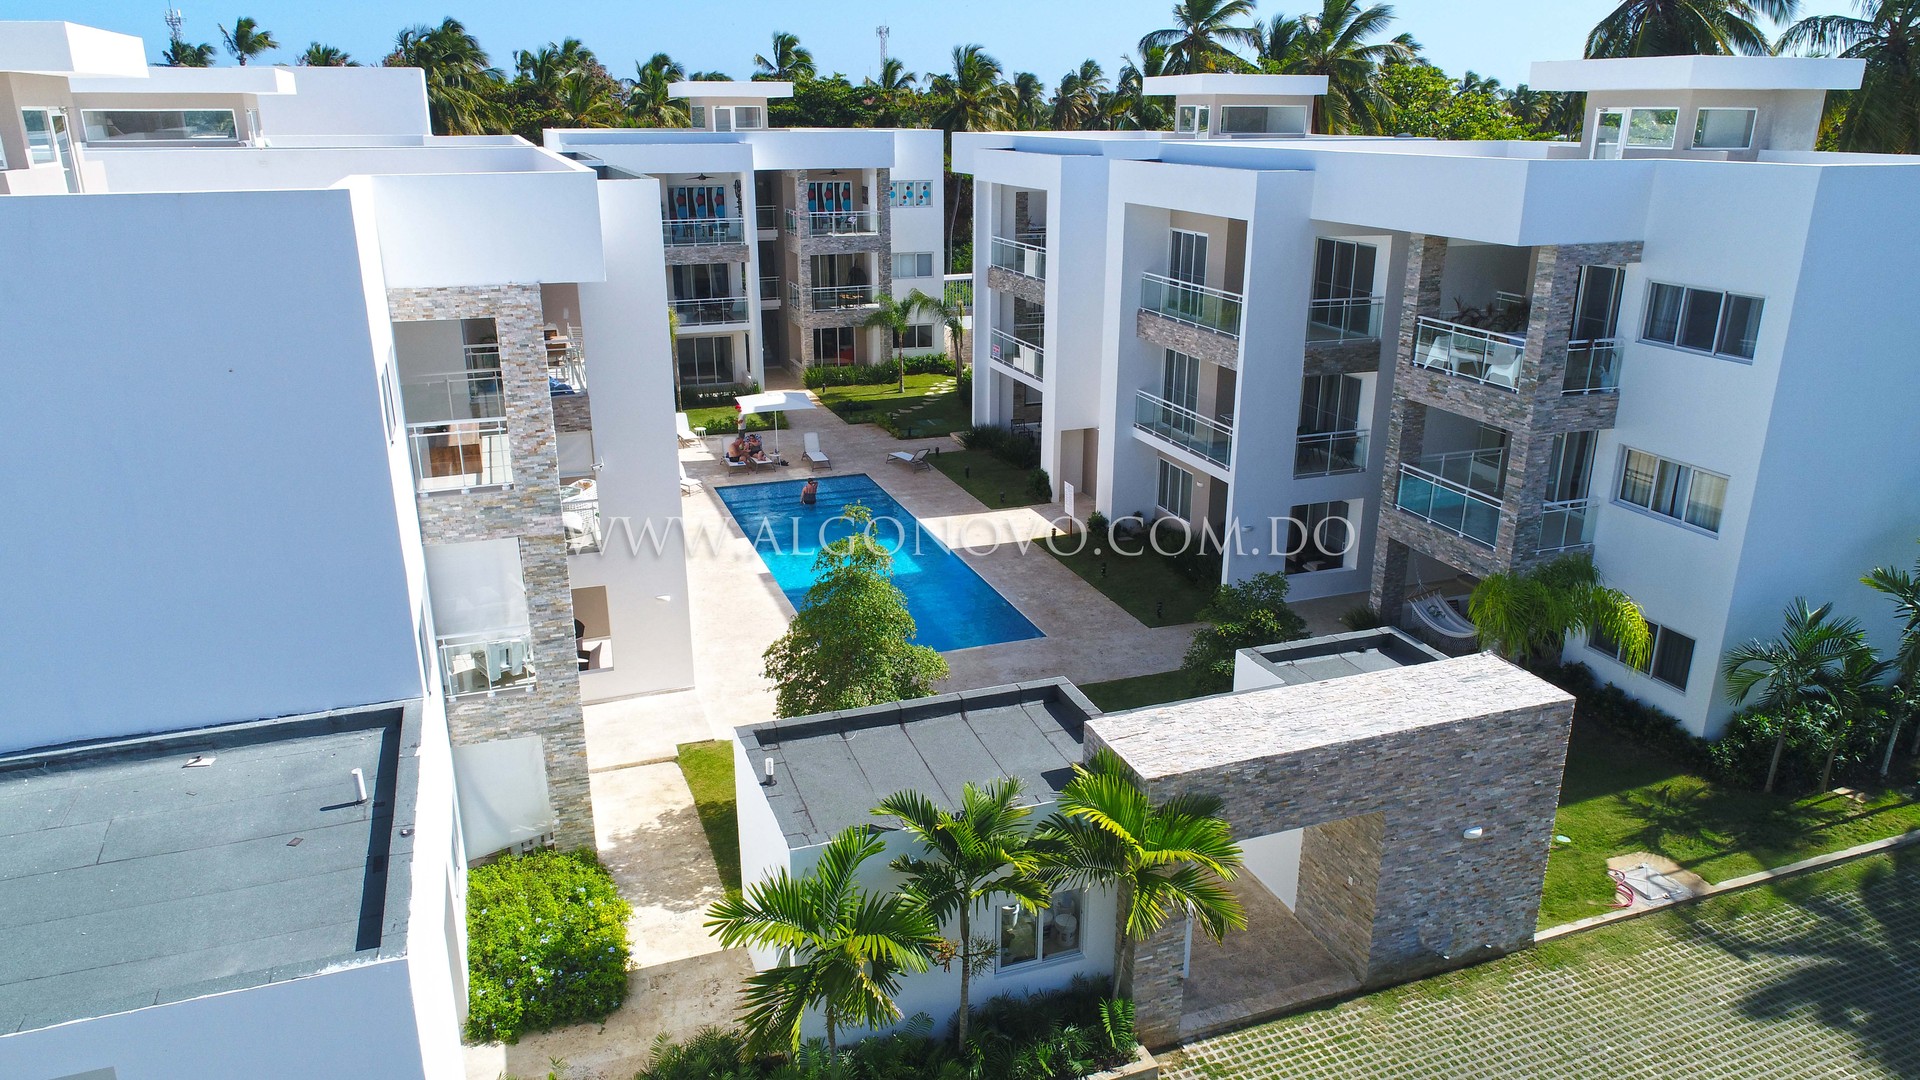 Apartamento en venta de 1 habitación en Punta Cana